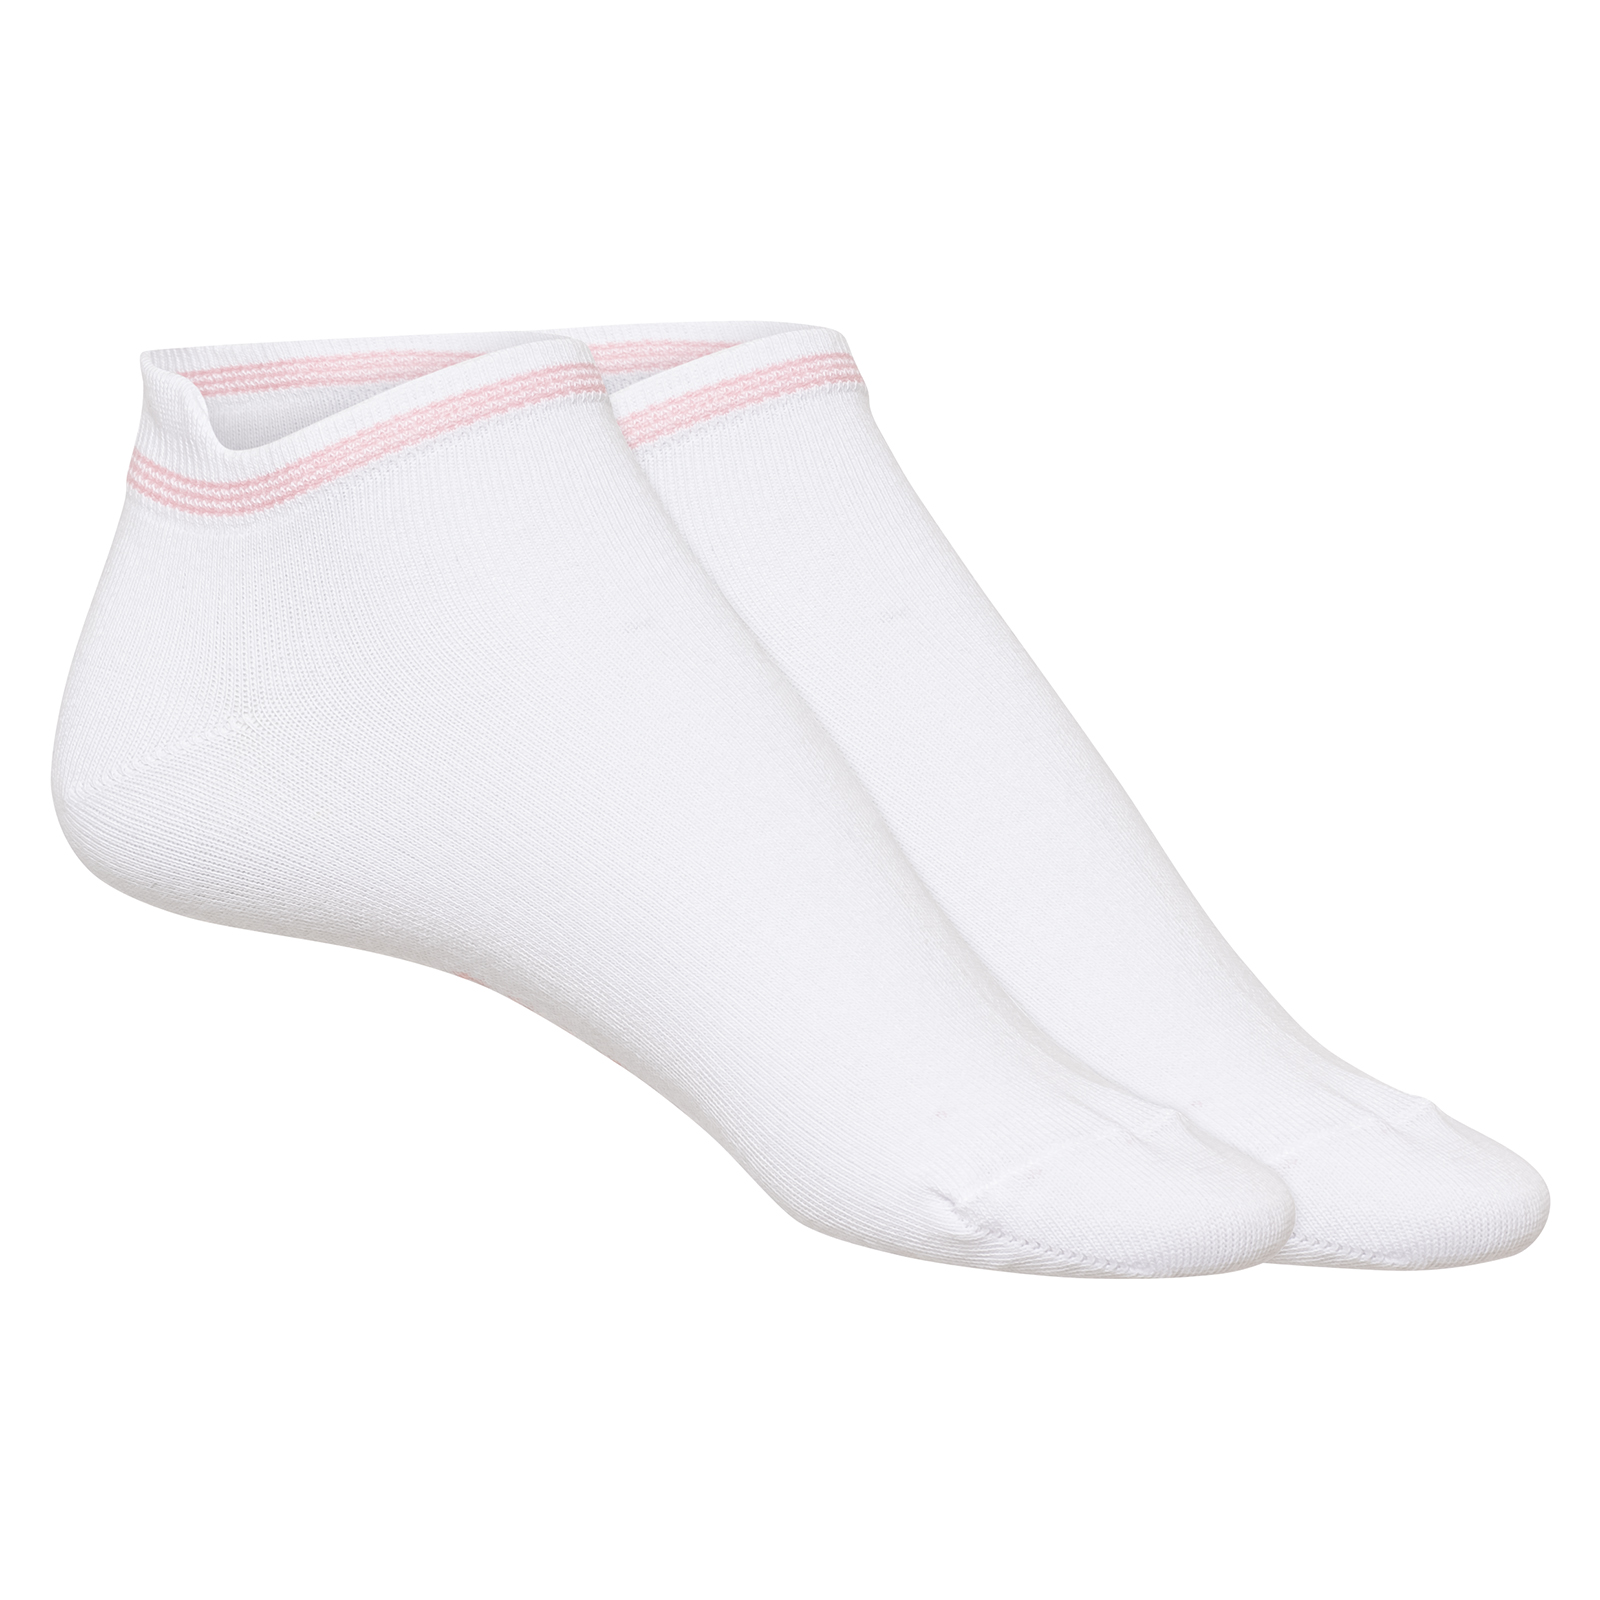 Kurze Damen Golf Socken mit Stretch-Funktion